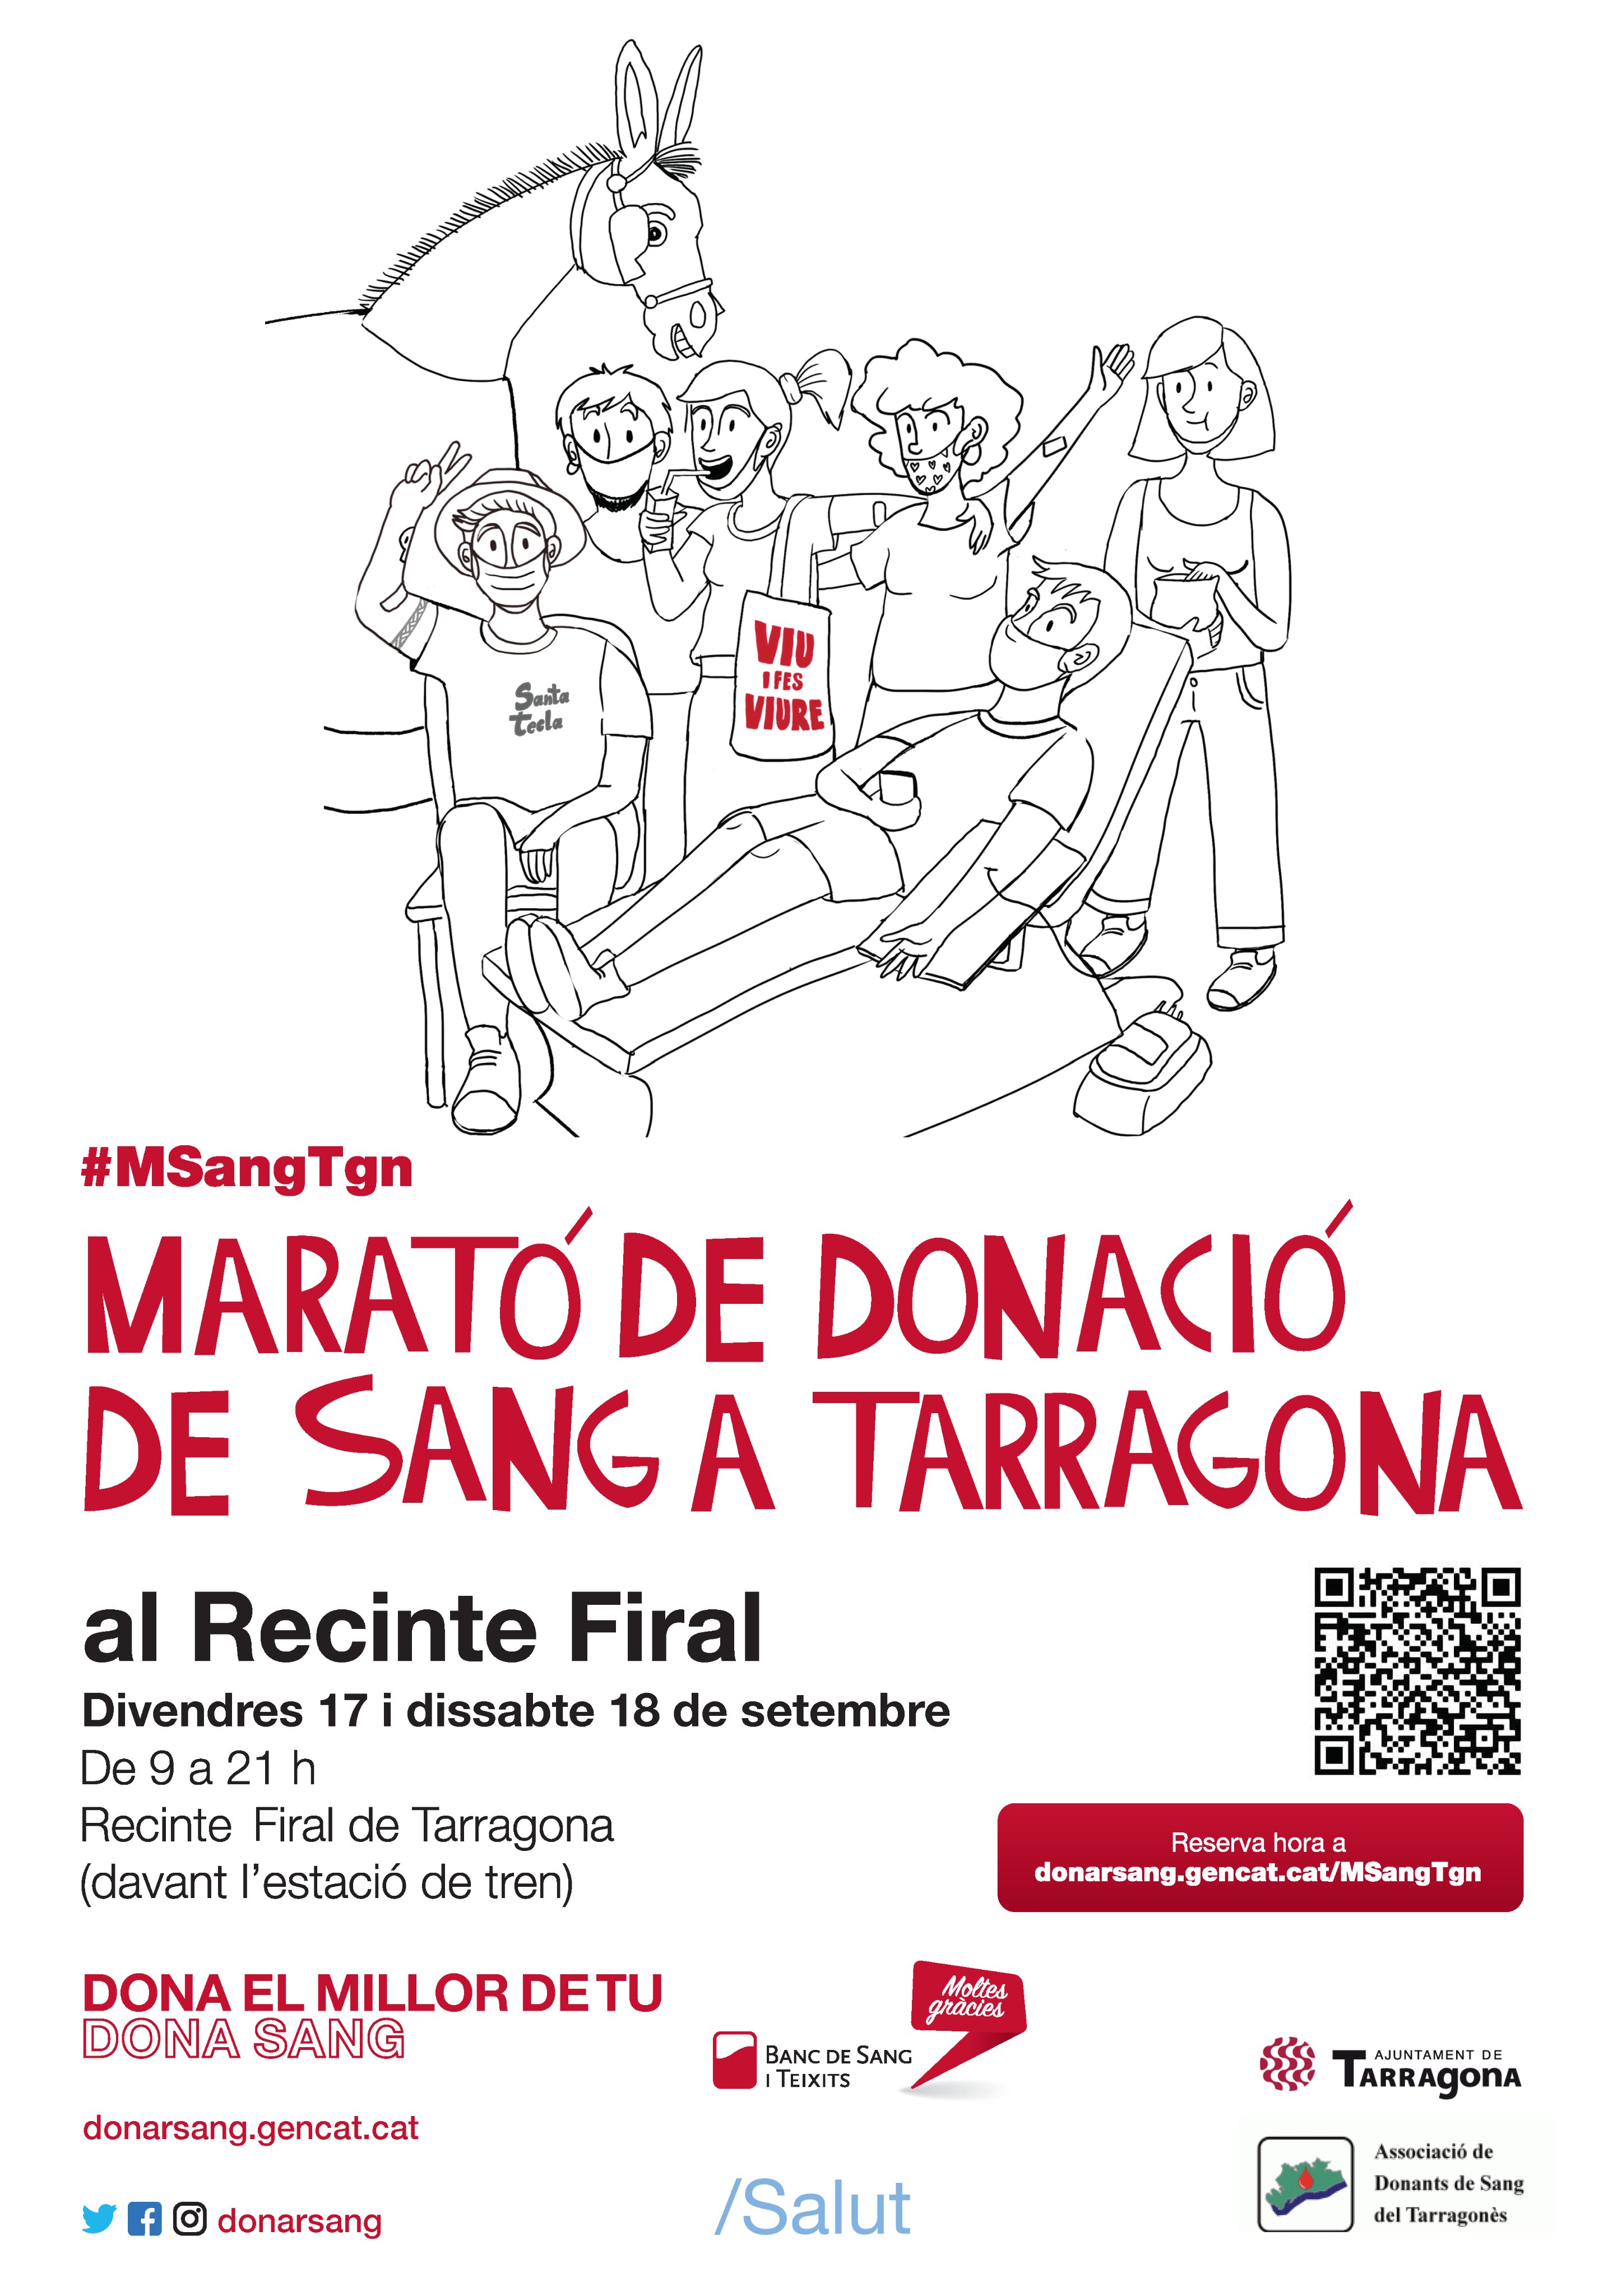 Marató de donació de sang a Tarragona